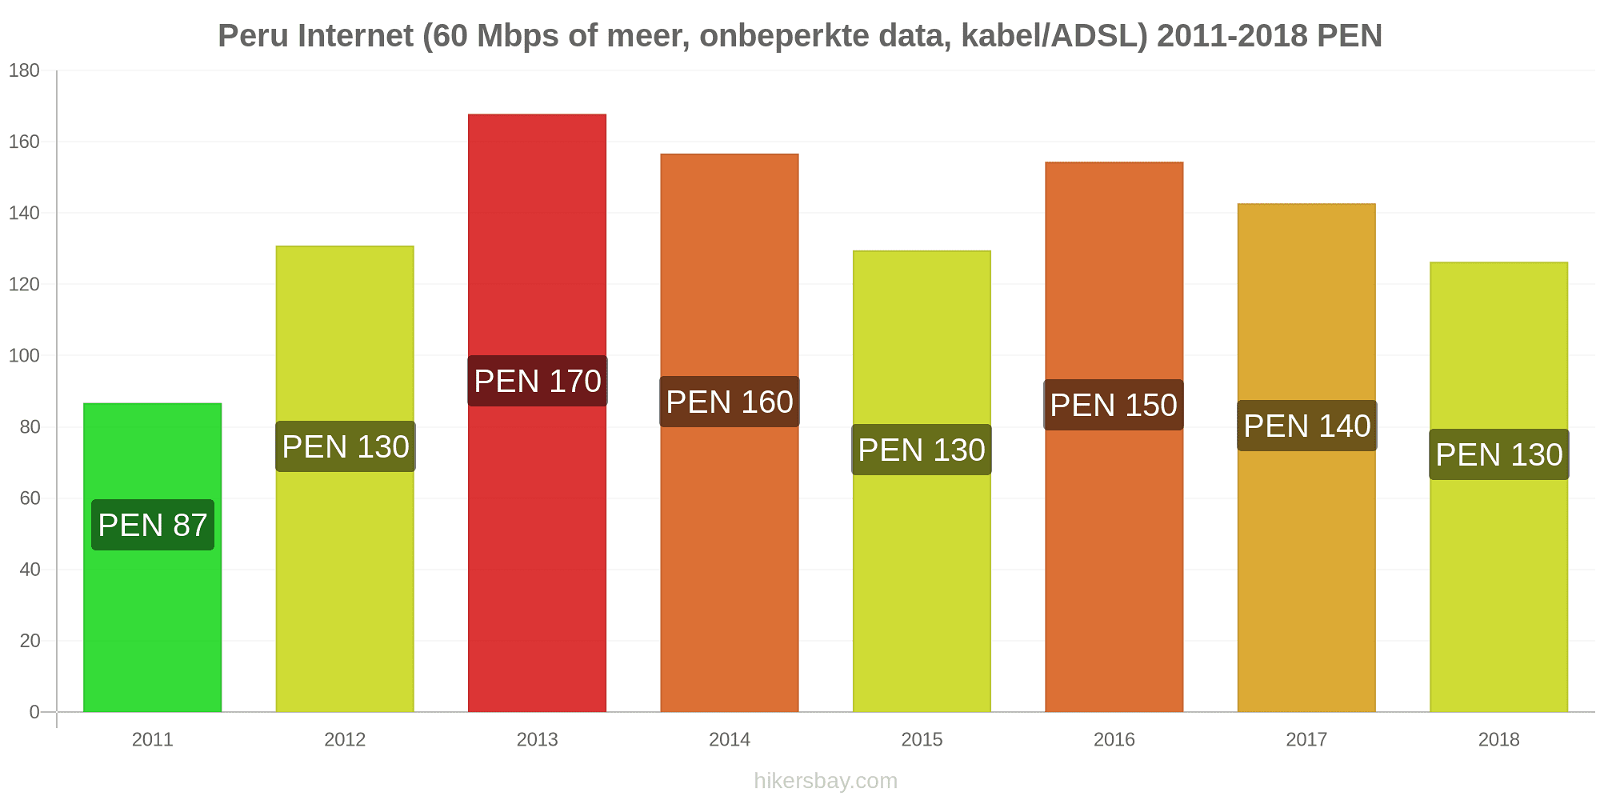 Peru prijswijzigingen Internet (60 Mbps of meer, Onbeperkte Data, Kabel/ADSL) hikersbay.com